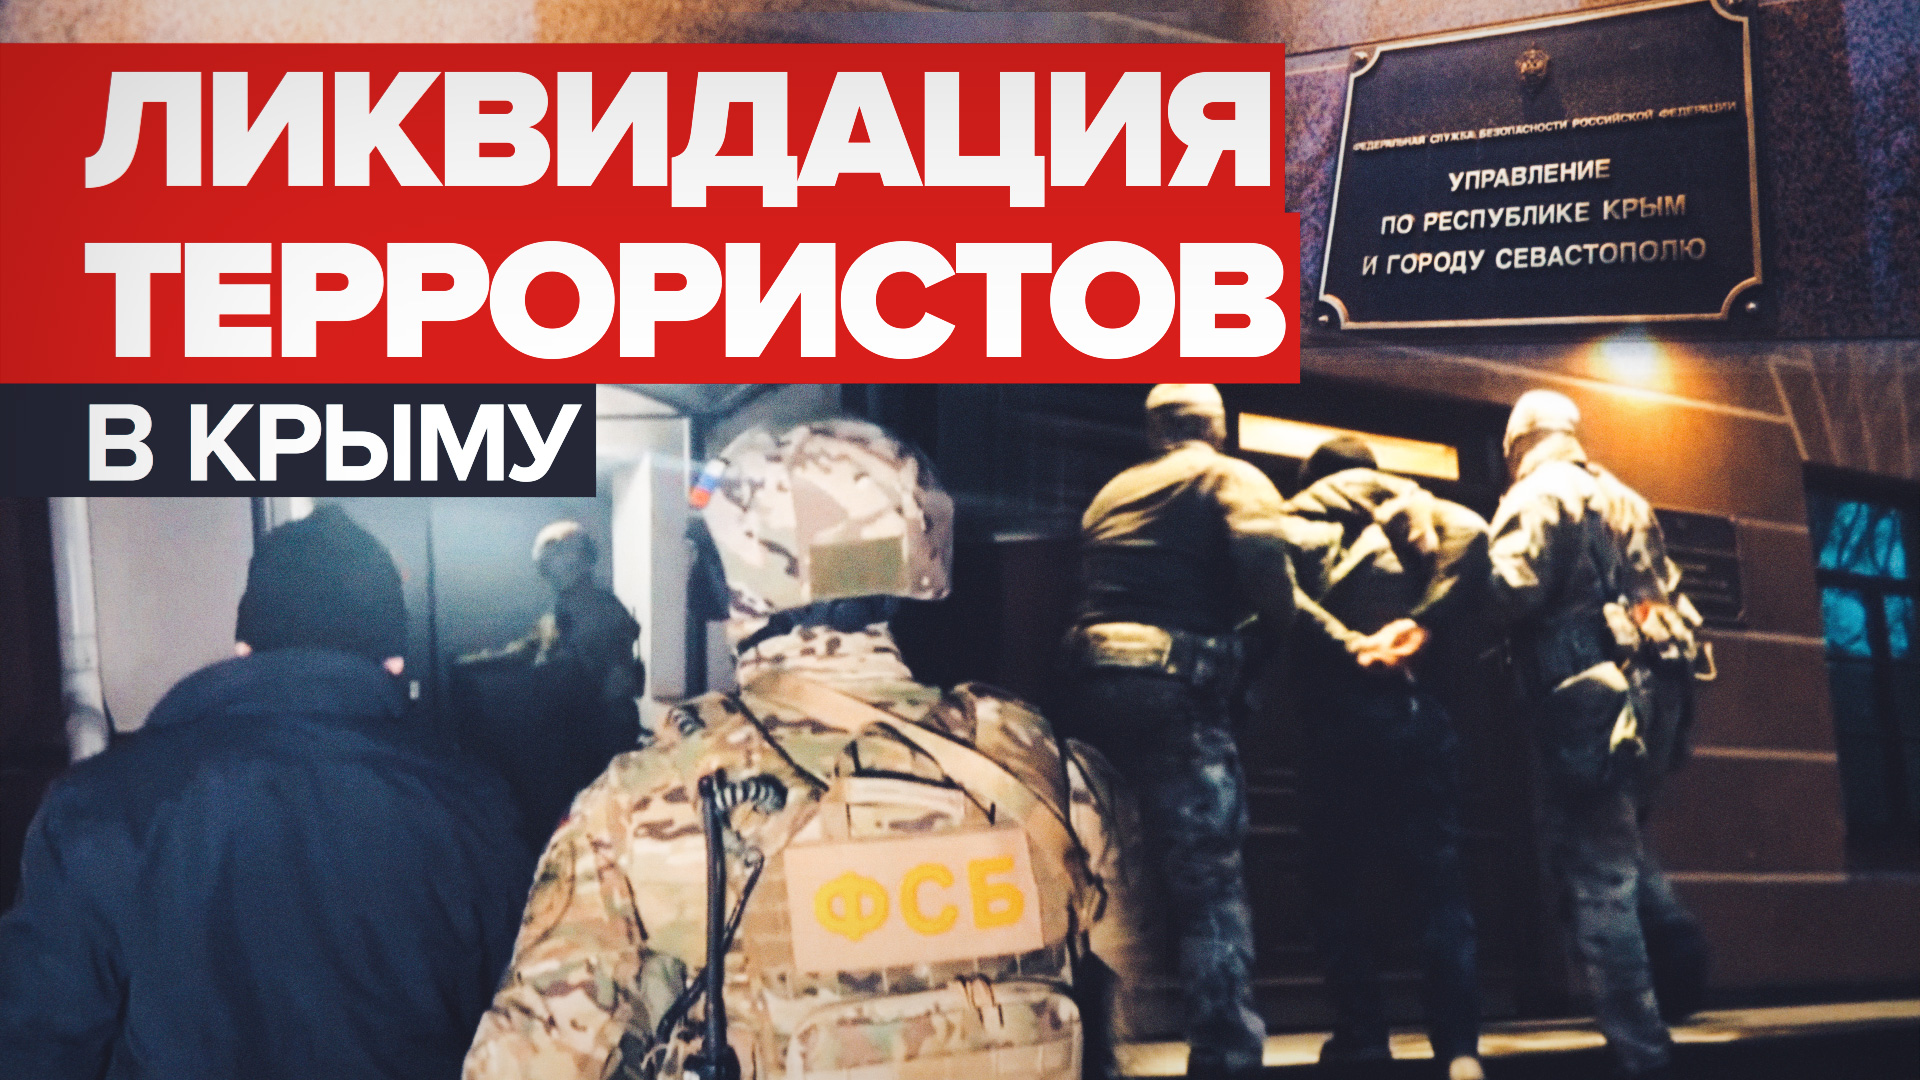 Ликвидация террористической ячейки в Крыму — видео